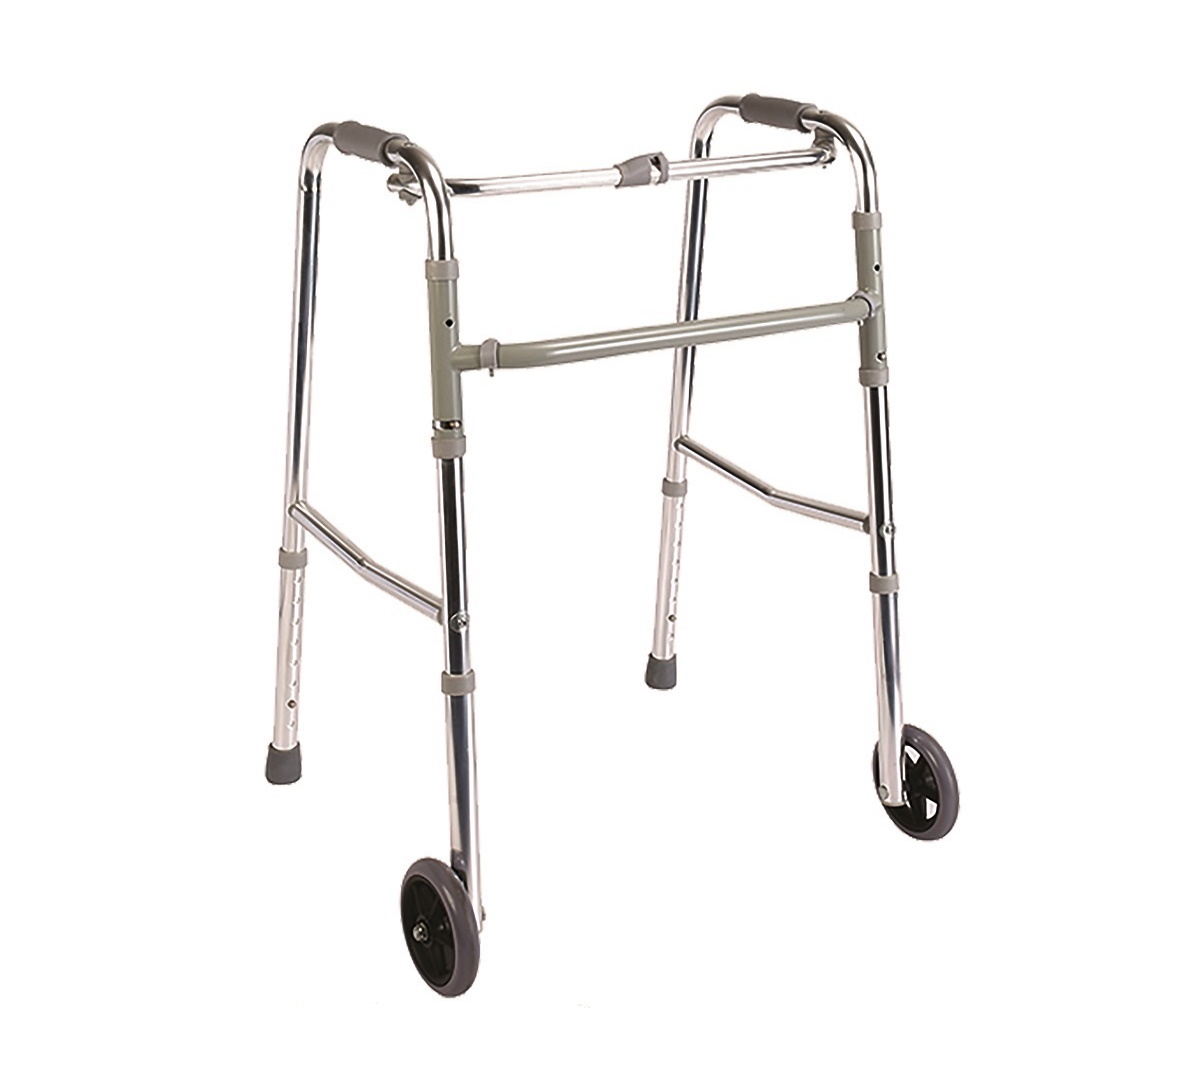 POYLİN | P551 Tekerlekli Walker | Akülü Tekerlekli Sandalye | Tekerlekli Sandalye